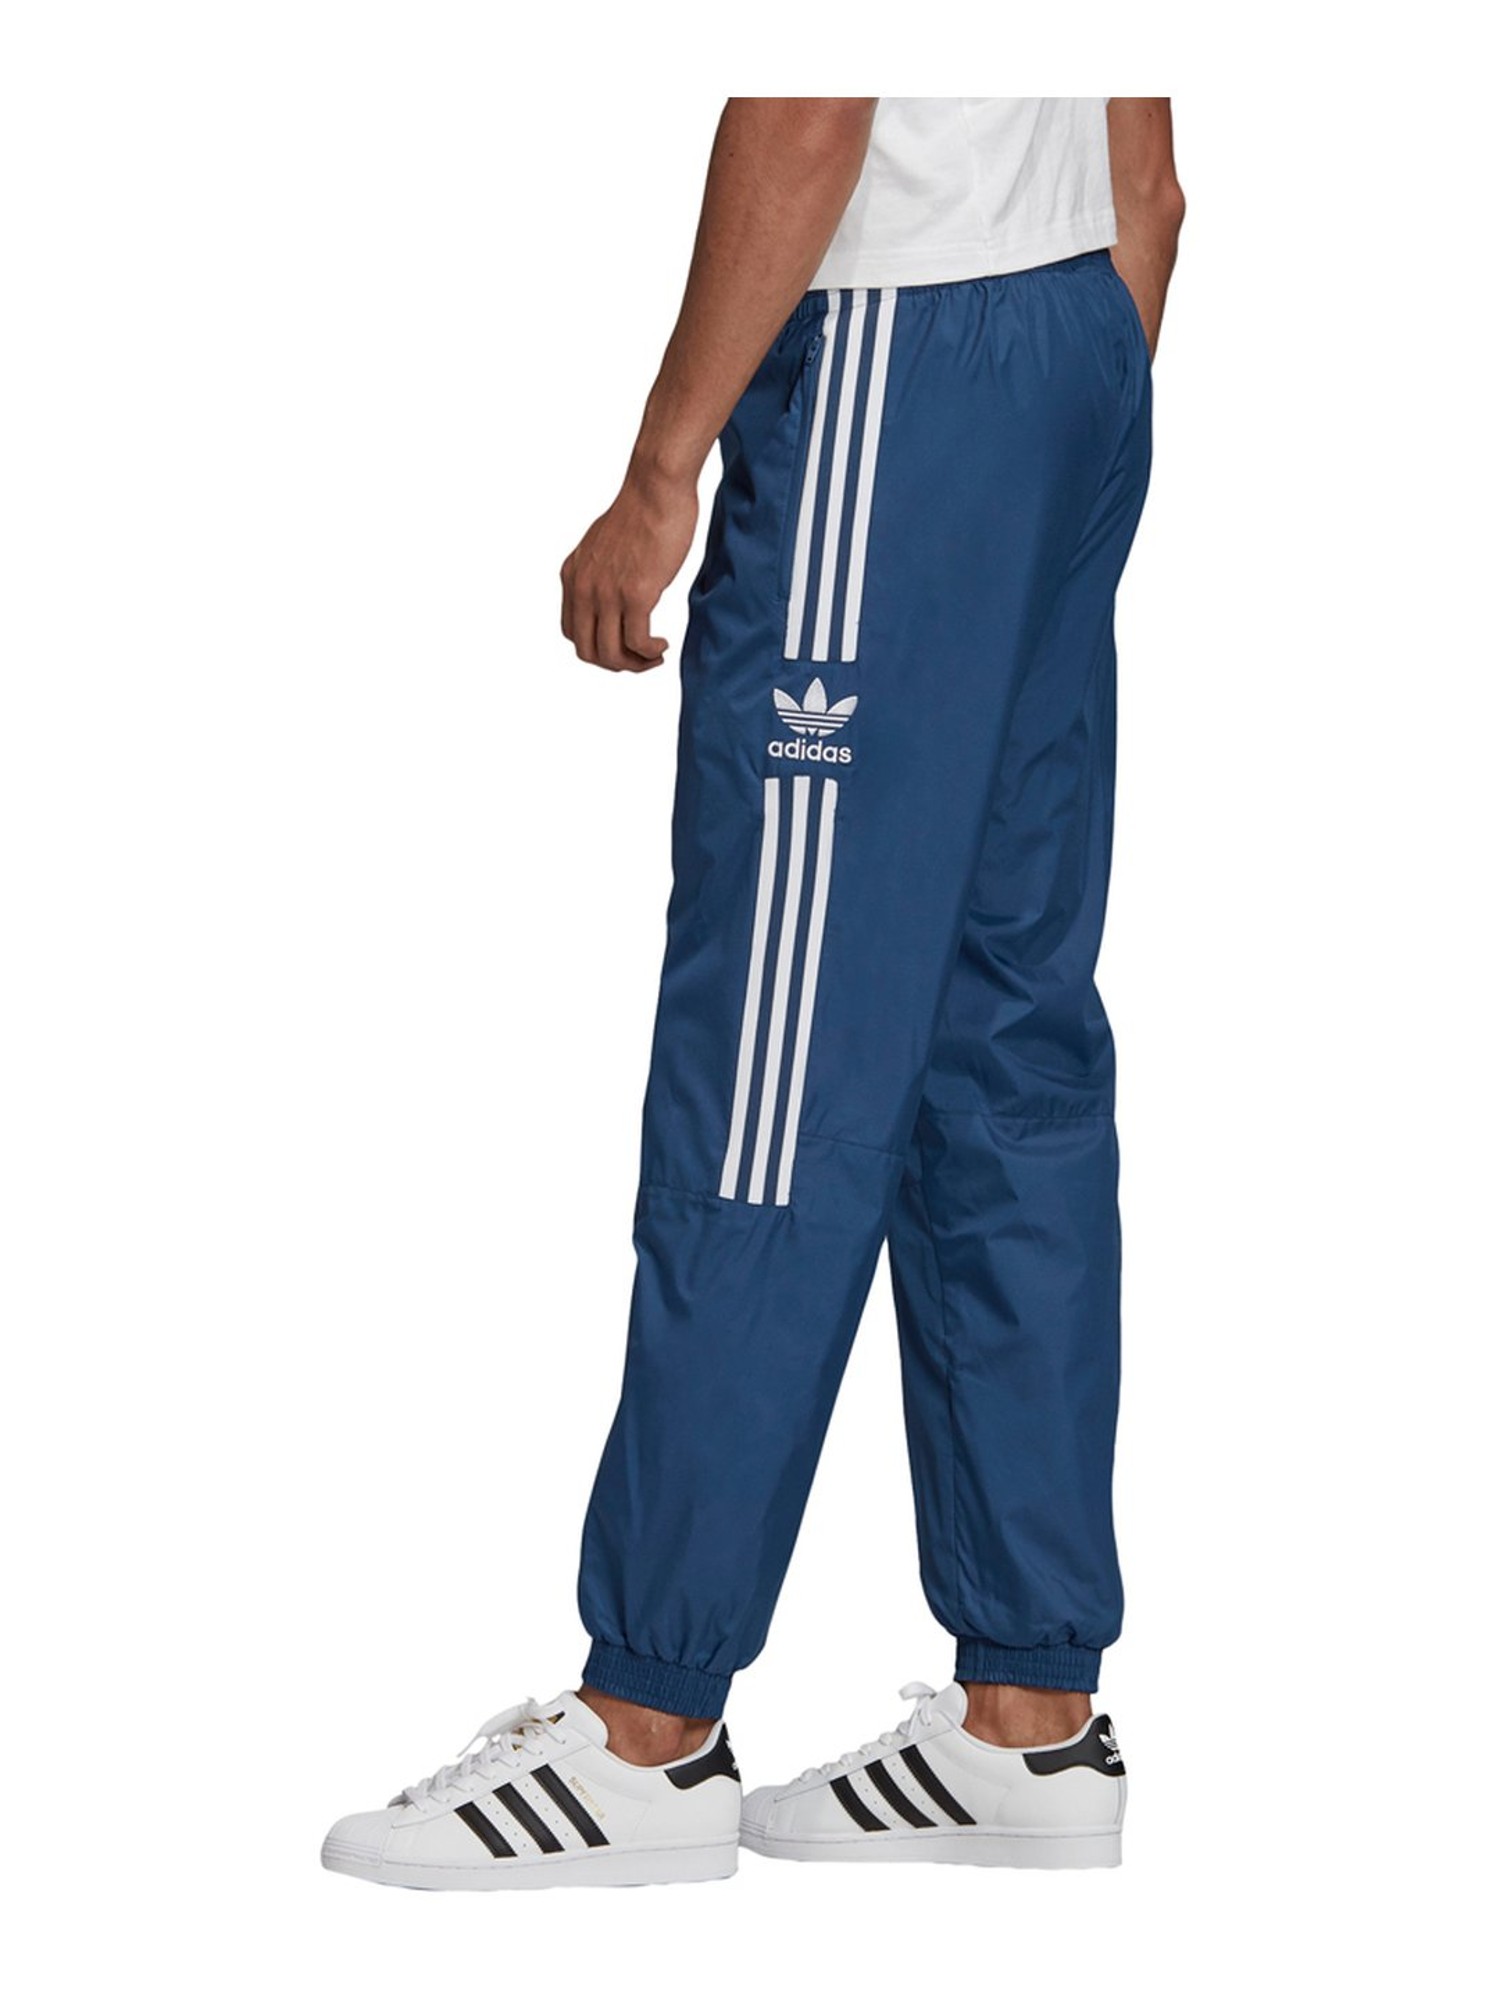 Buy Adidas Originals Black Regular Fit Trackpants for Mens Online  Tata  CLiQ